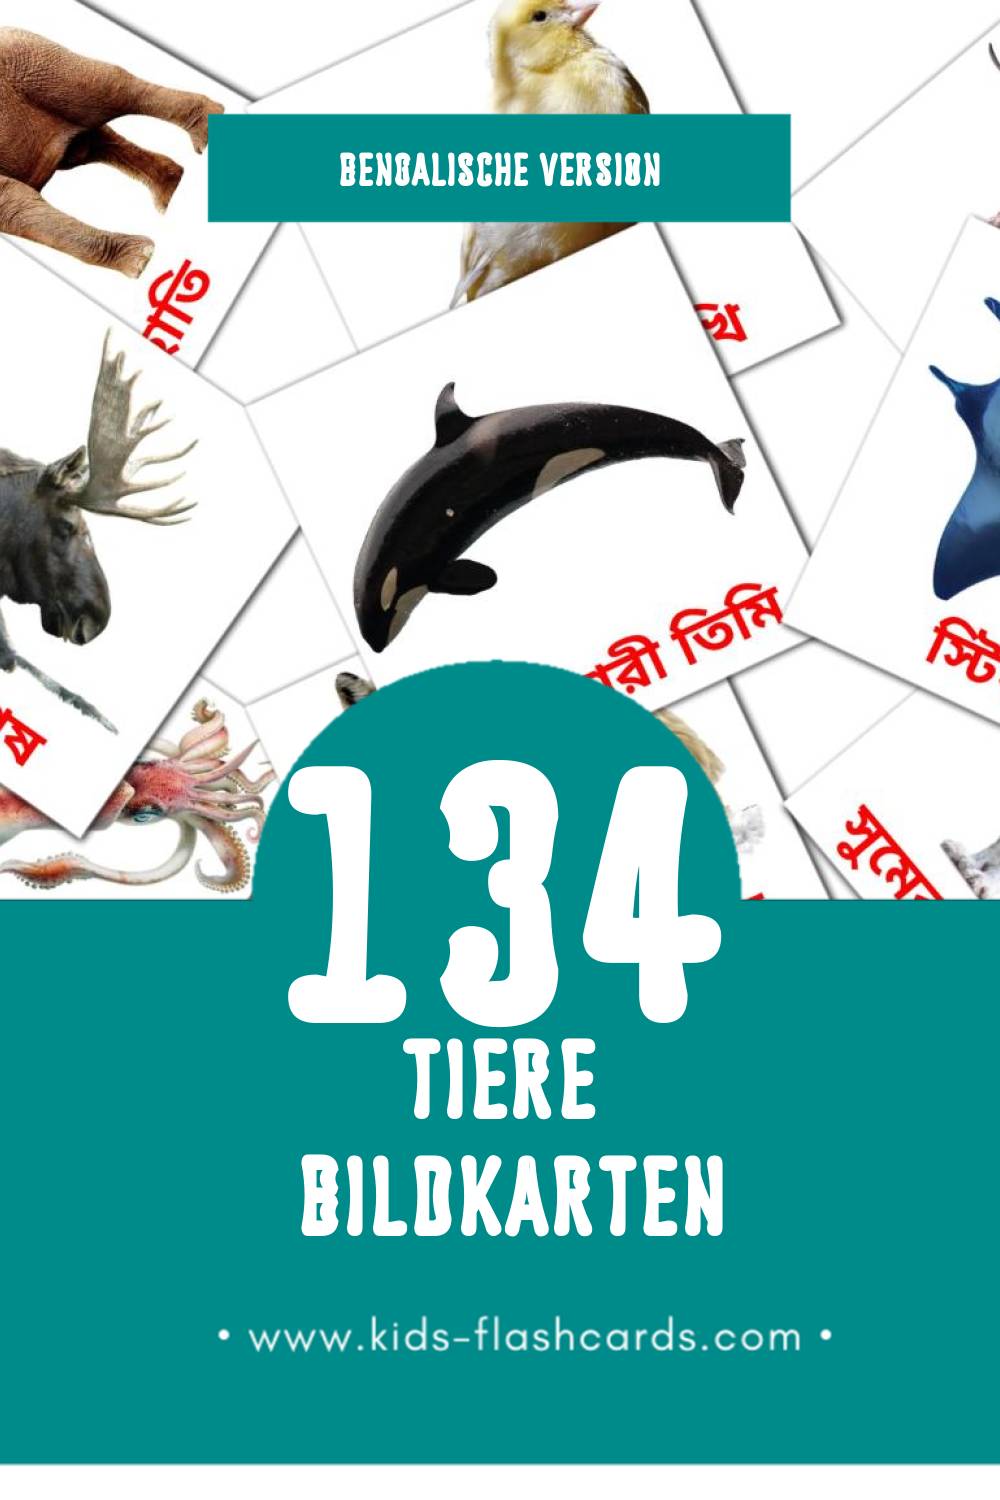 Visual পশু Flashcards für Kleinkinder (134 Karten in Bengalisch)